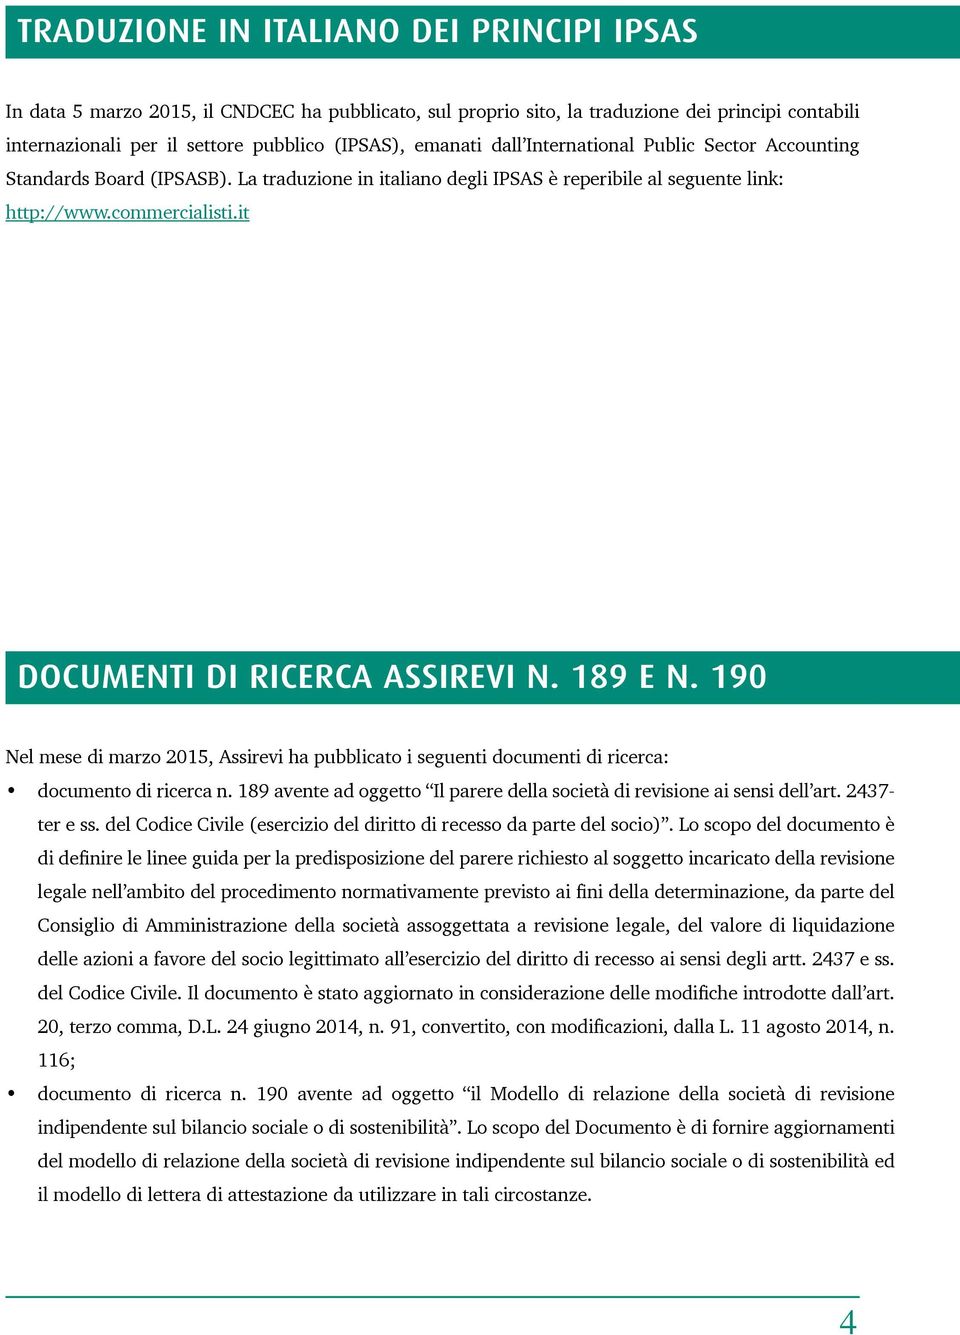 189 E N. 190 Nel mese di marzo 2015, Assirevi ha pubblicato i seguenti documenti di ricerca: documento di ricerca n. 189 avente ad oggetto Il parere della società di revisione ai sensi dell art.